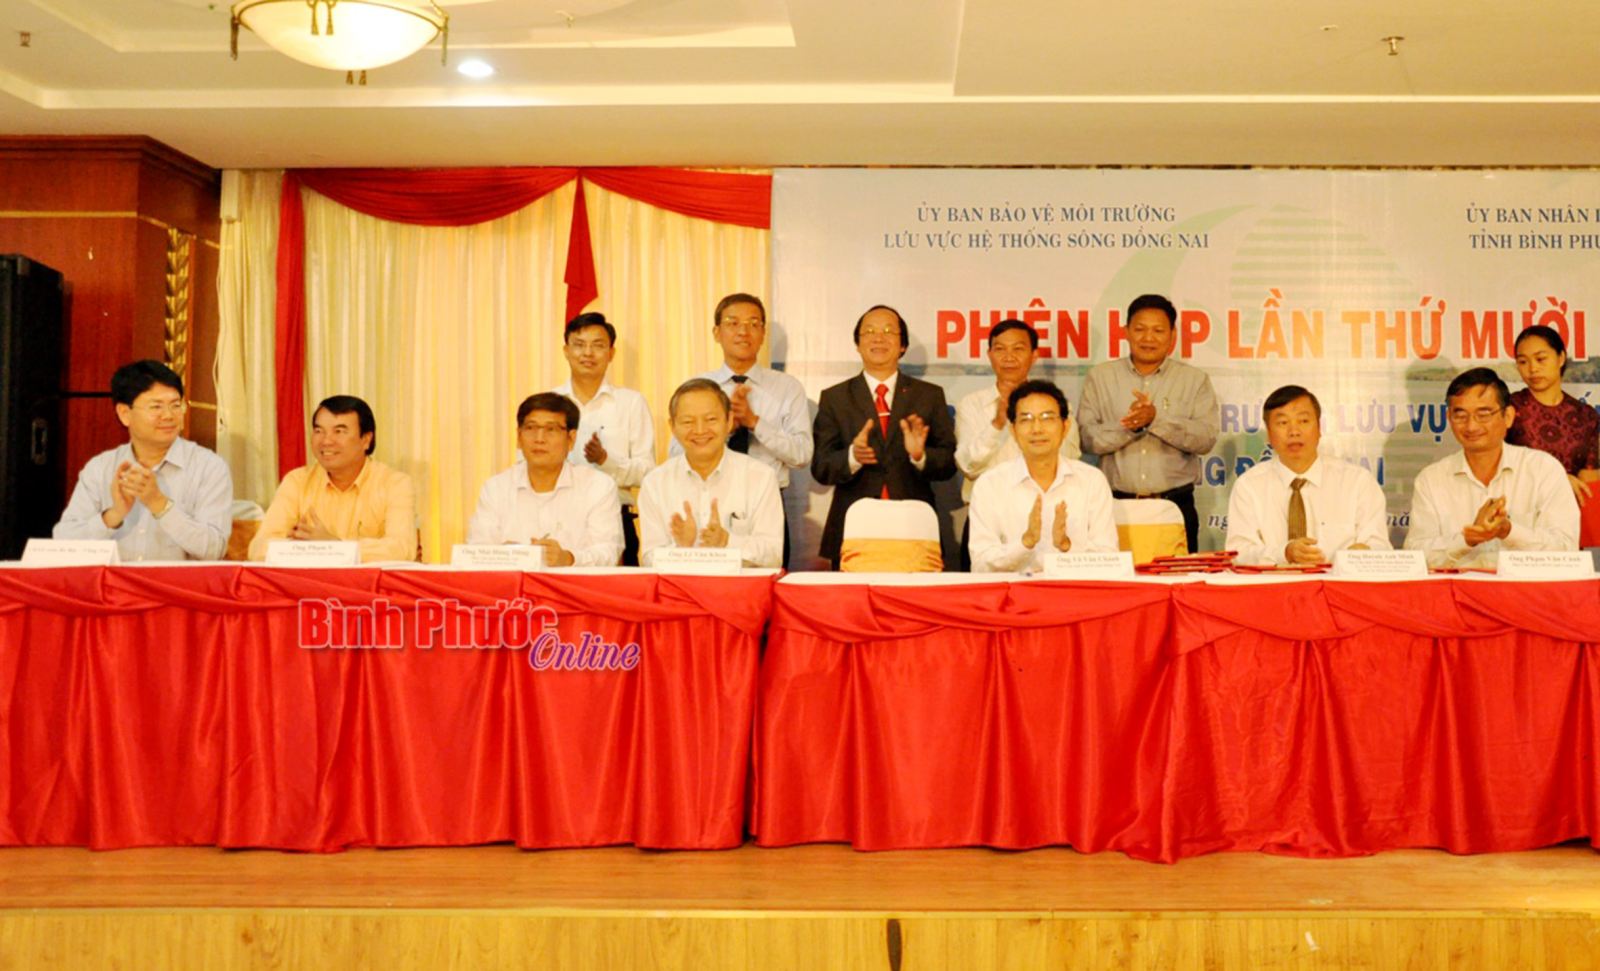 Đại diện lãnh đạo 9 tỉnh, thành phố ký kết quy chế phối hợp bảo vệ lưu vực hệ thống sông Đồng Nai